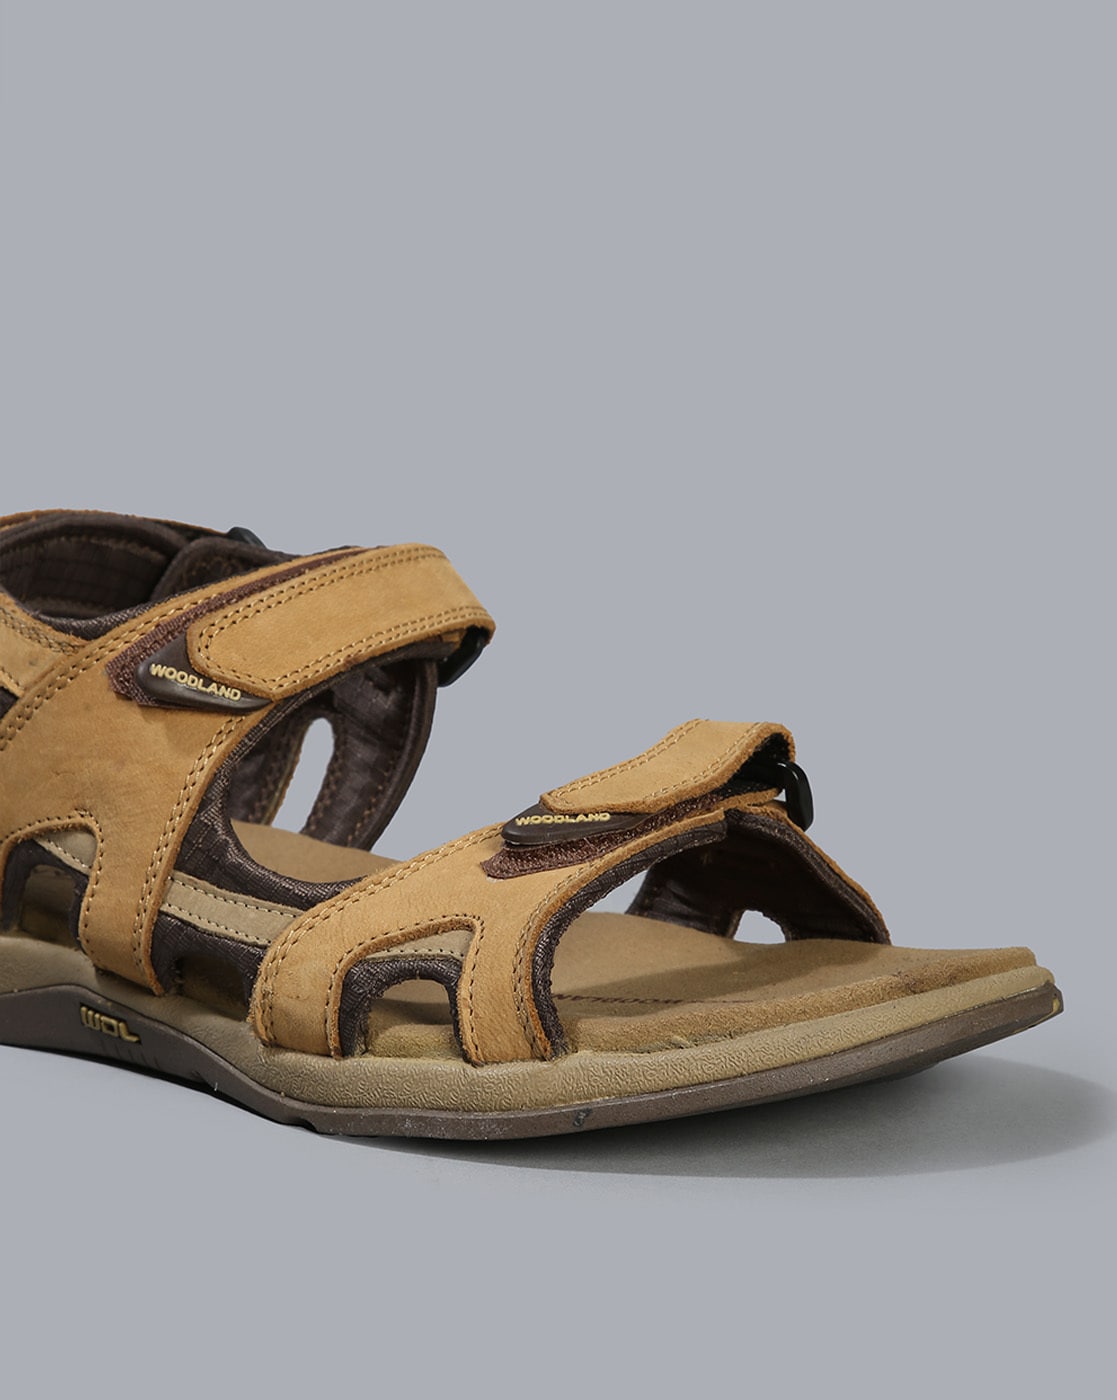 TINO GONZALEZ Tino Gonzalez formal shoe Camel Ανακάλυψε τα στο